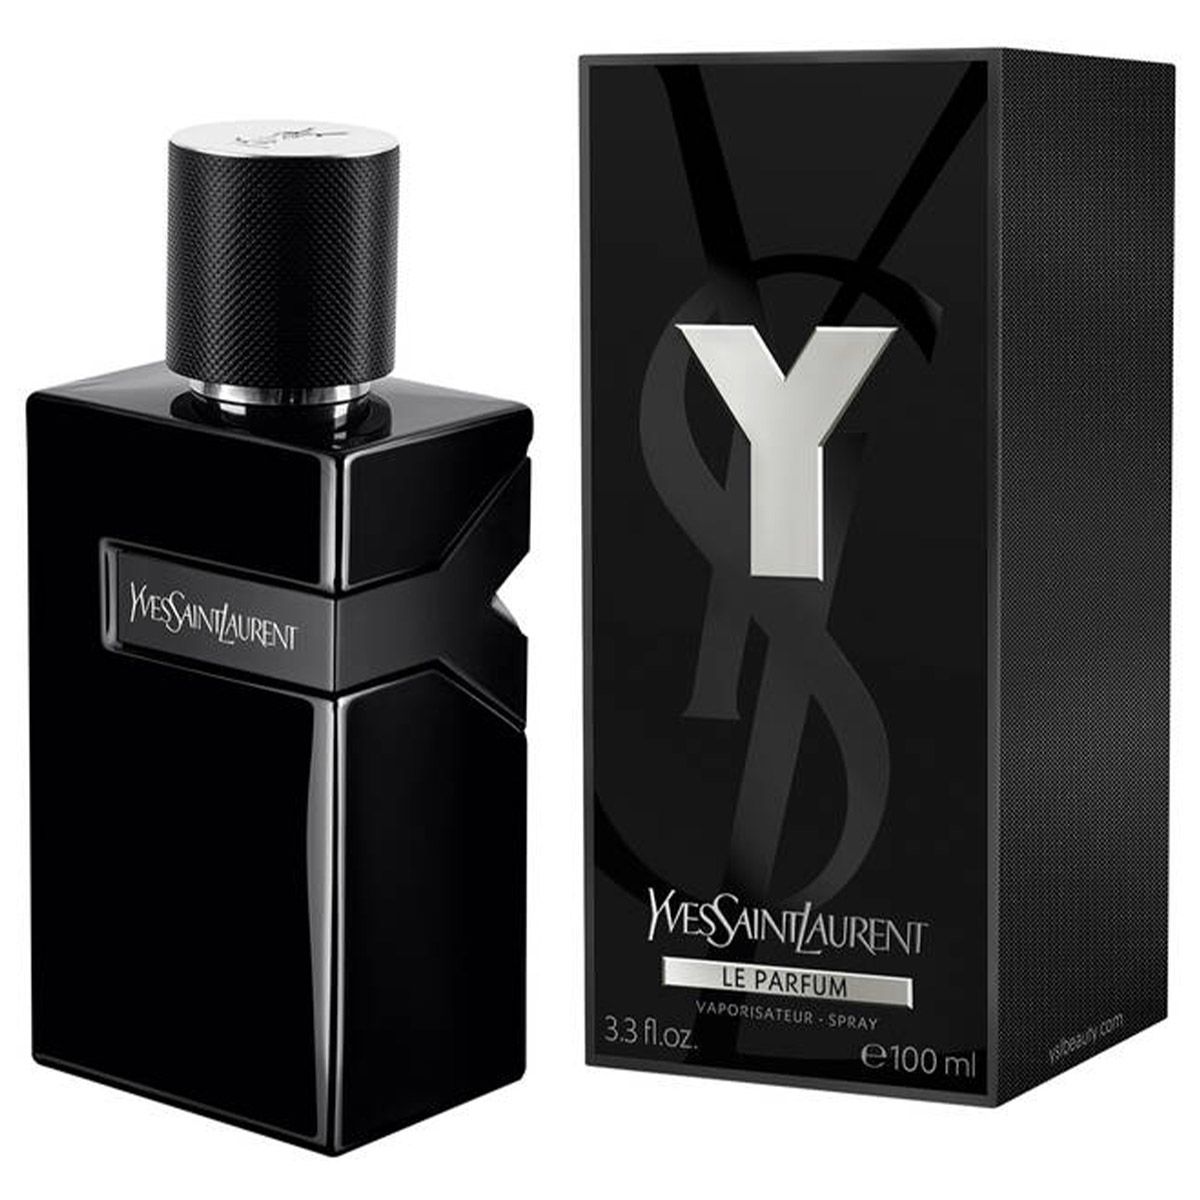  Yves Saint Laurent Y Le Parfum 